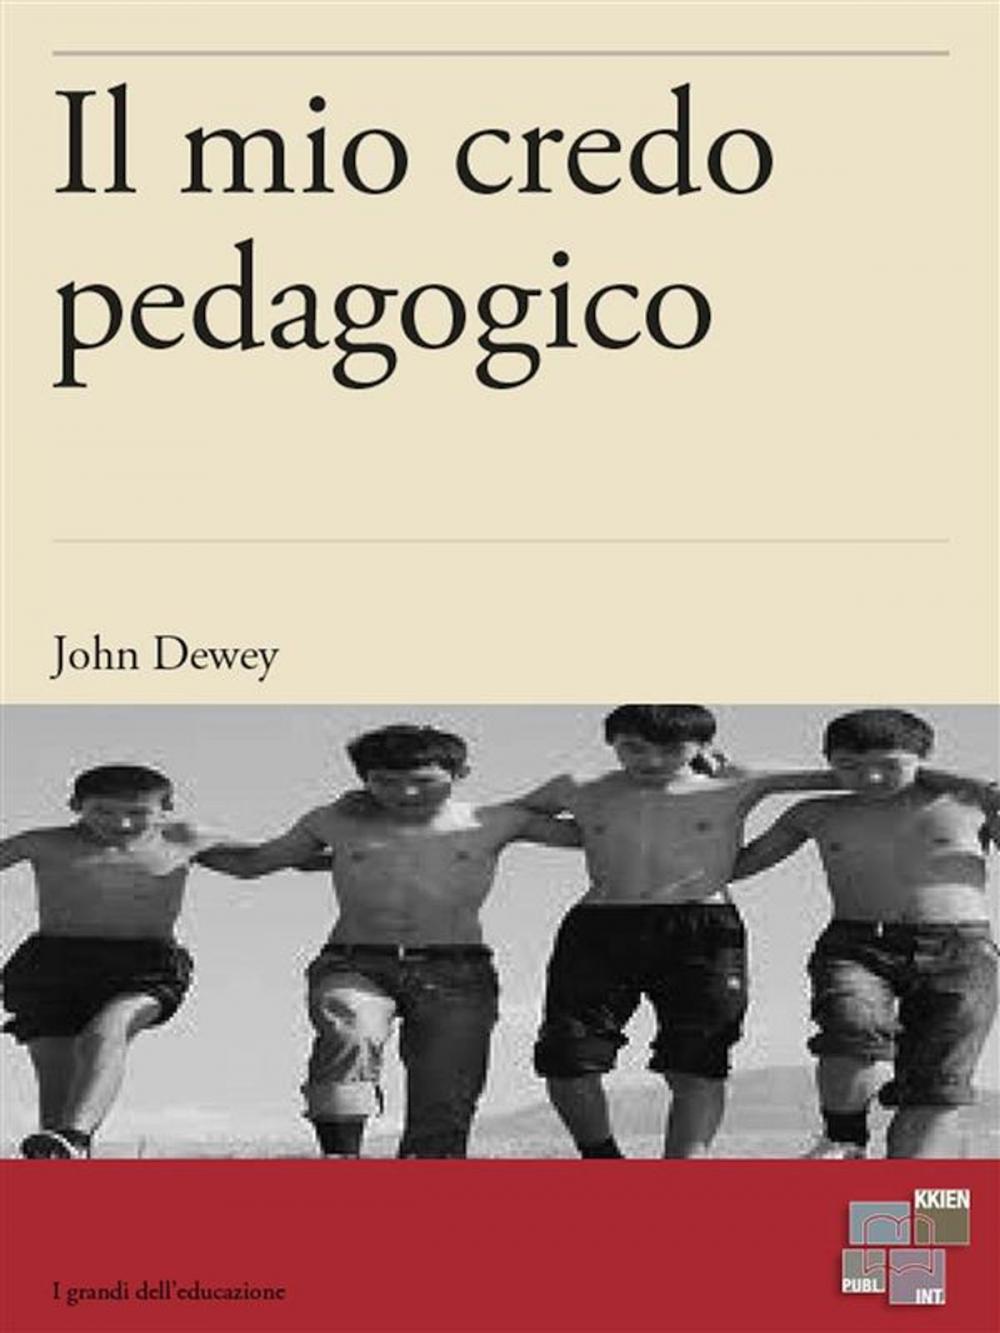 Big bigCover of Il mio credo pedagogico